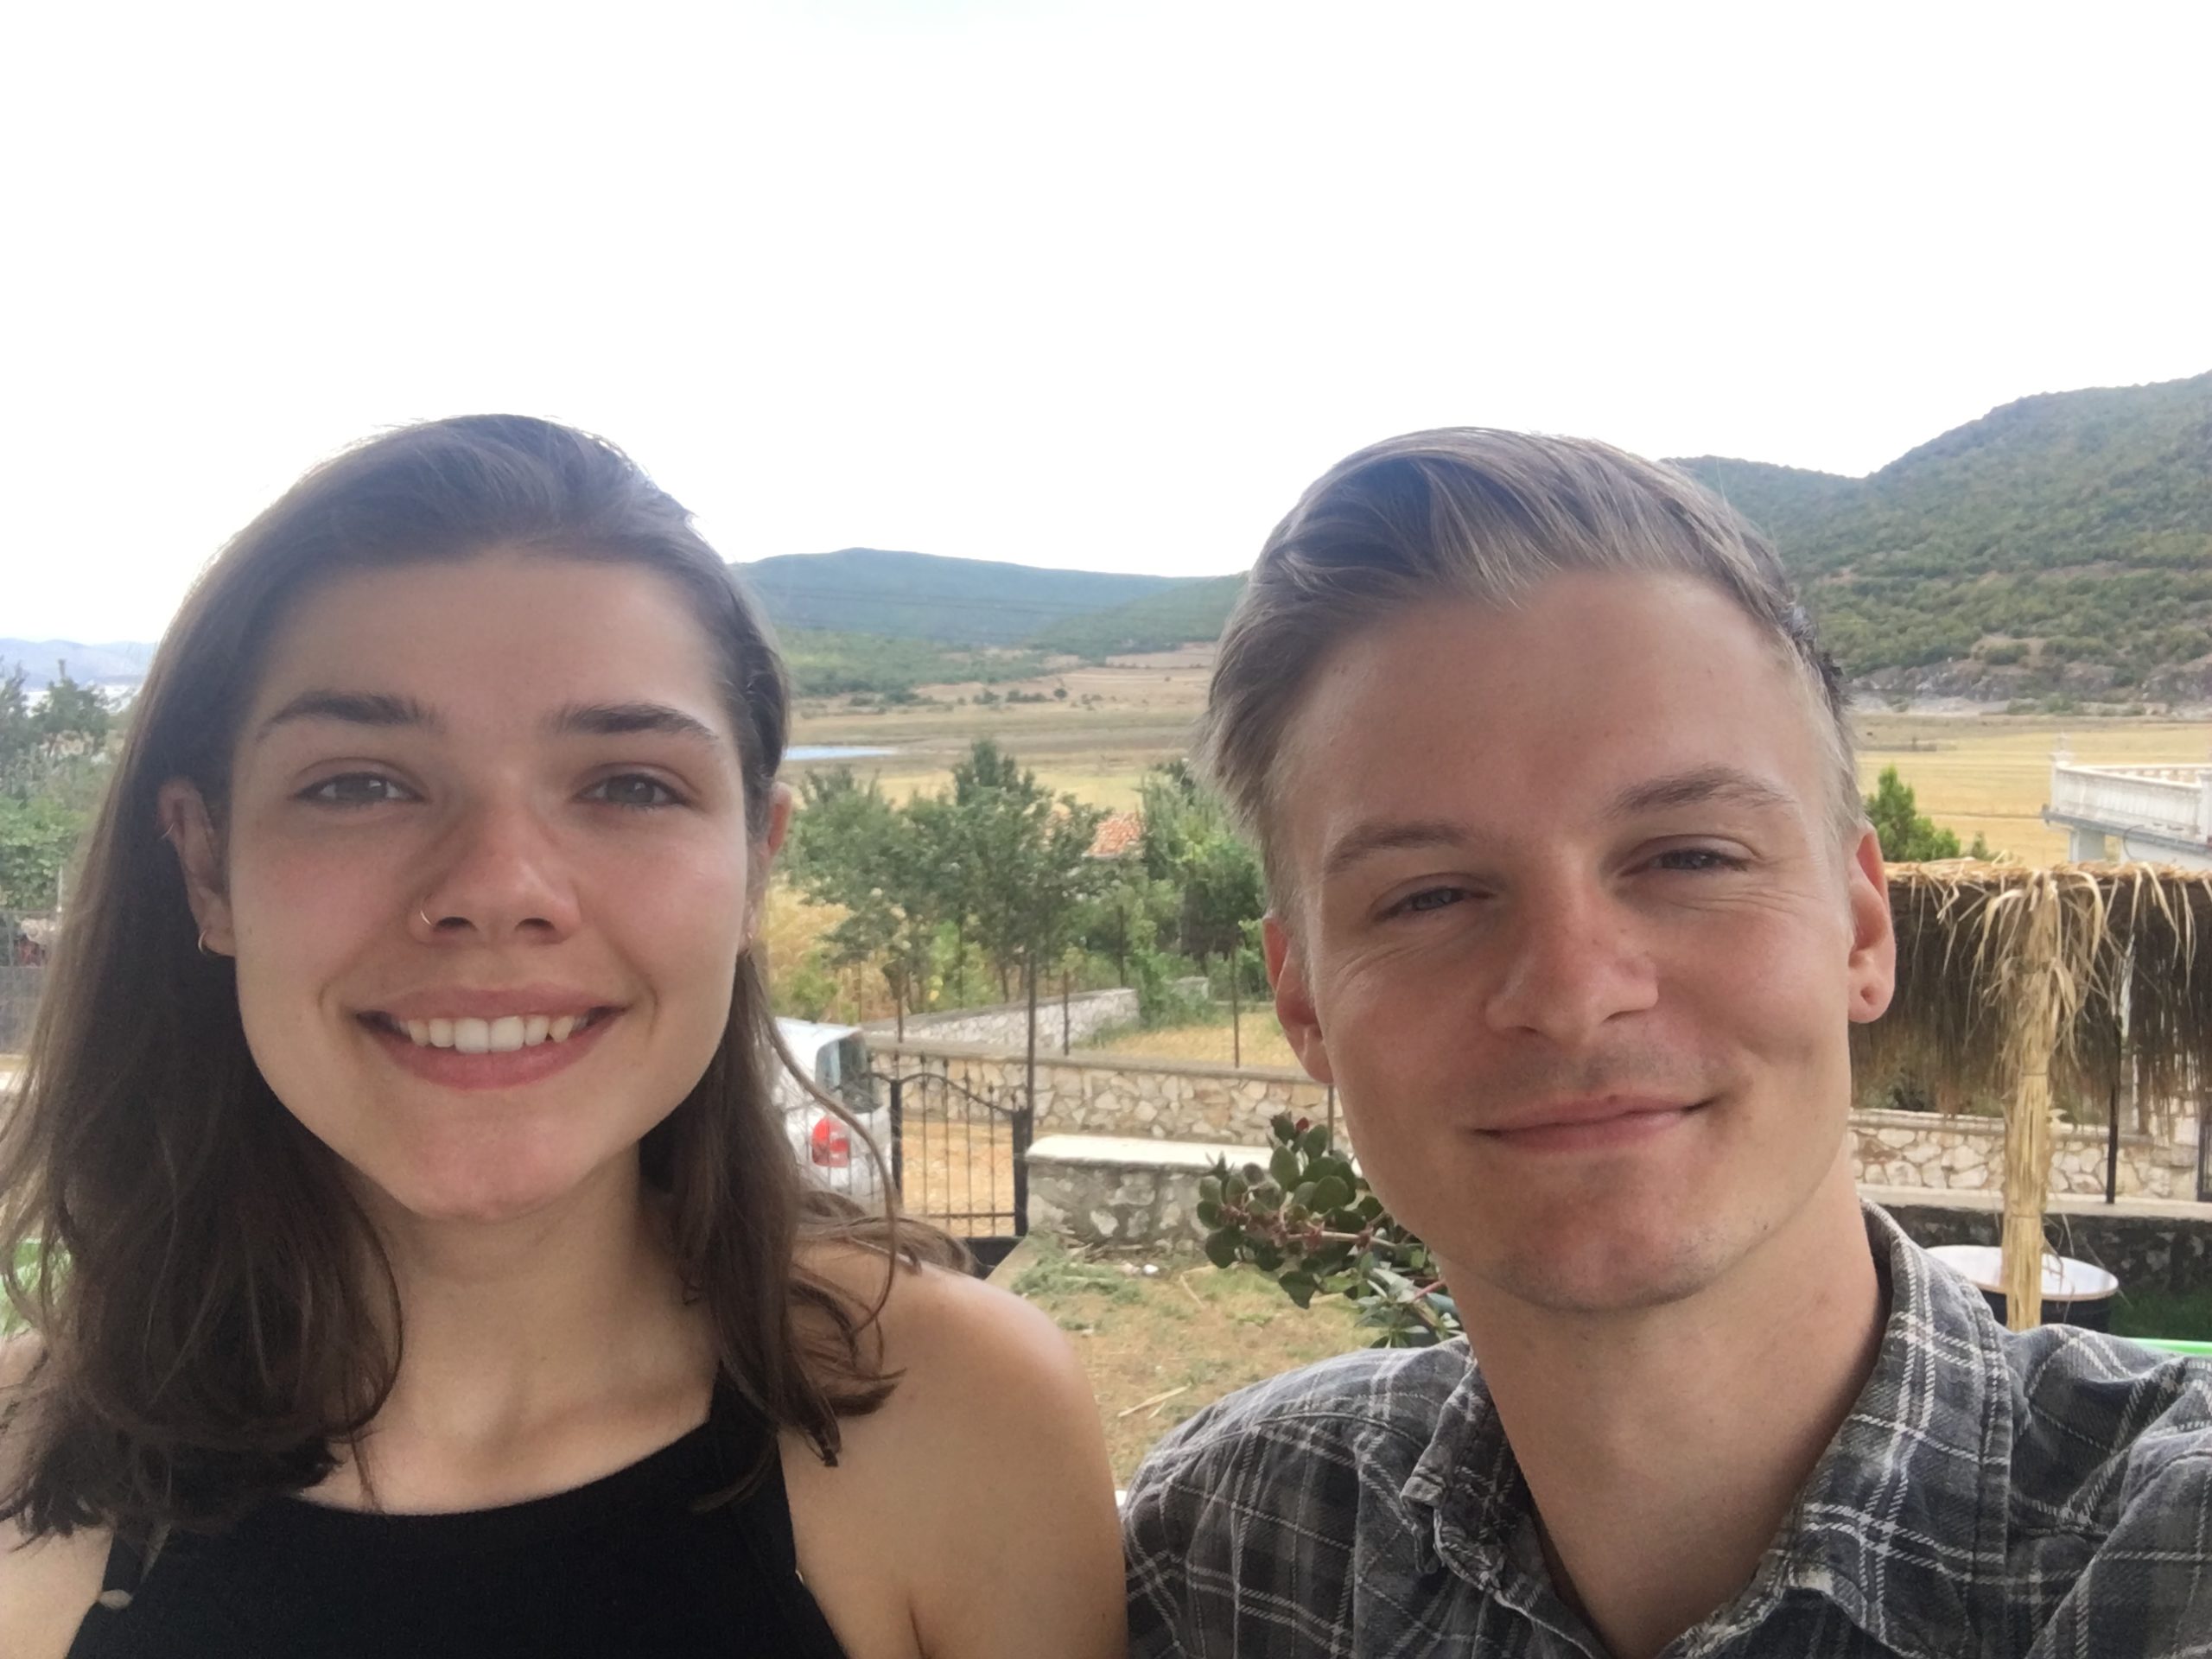 Jacky dhe Veith, dy studentët nga Gjermania që do të kalojnë gjashtë muaj pranë zyrës lokale të PPNEA në Prespë